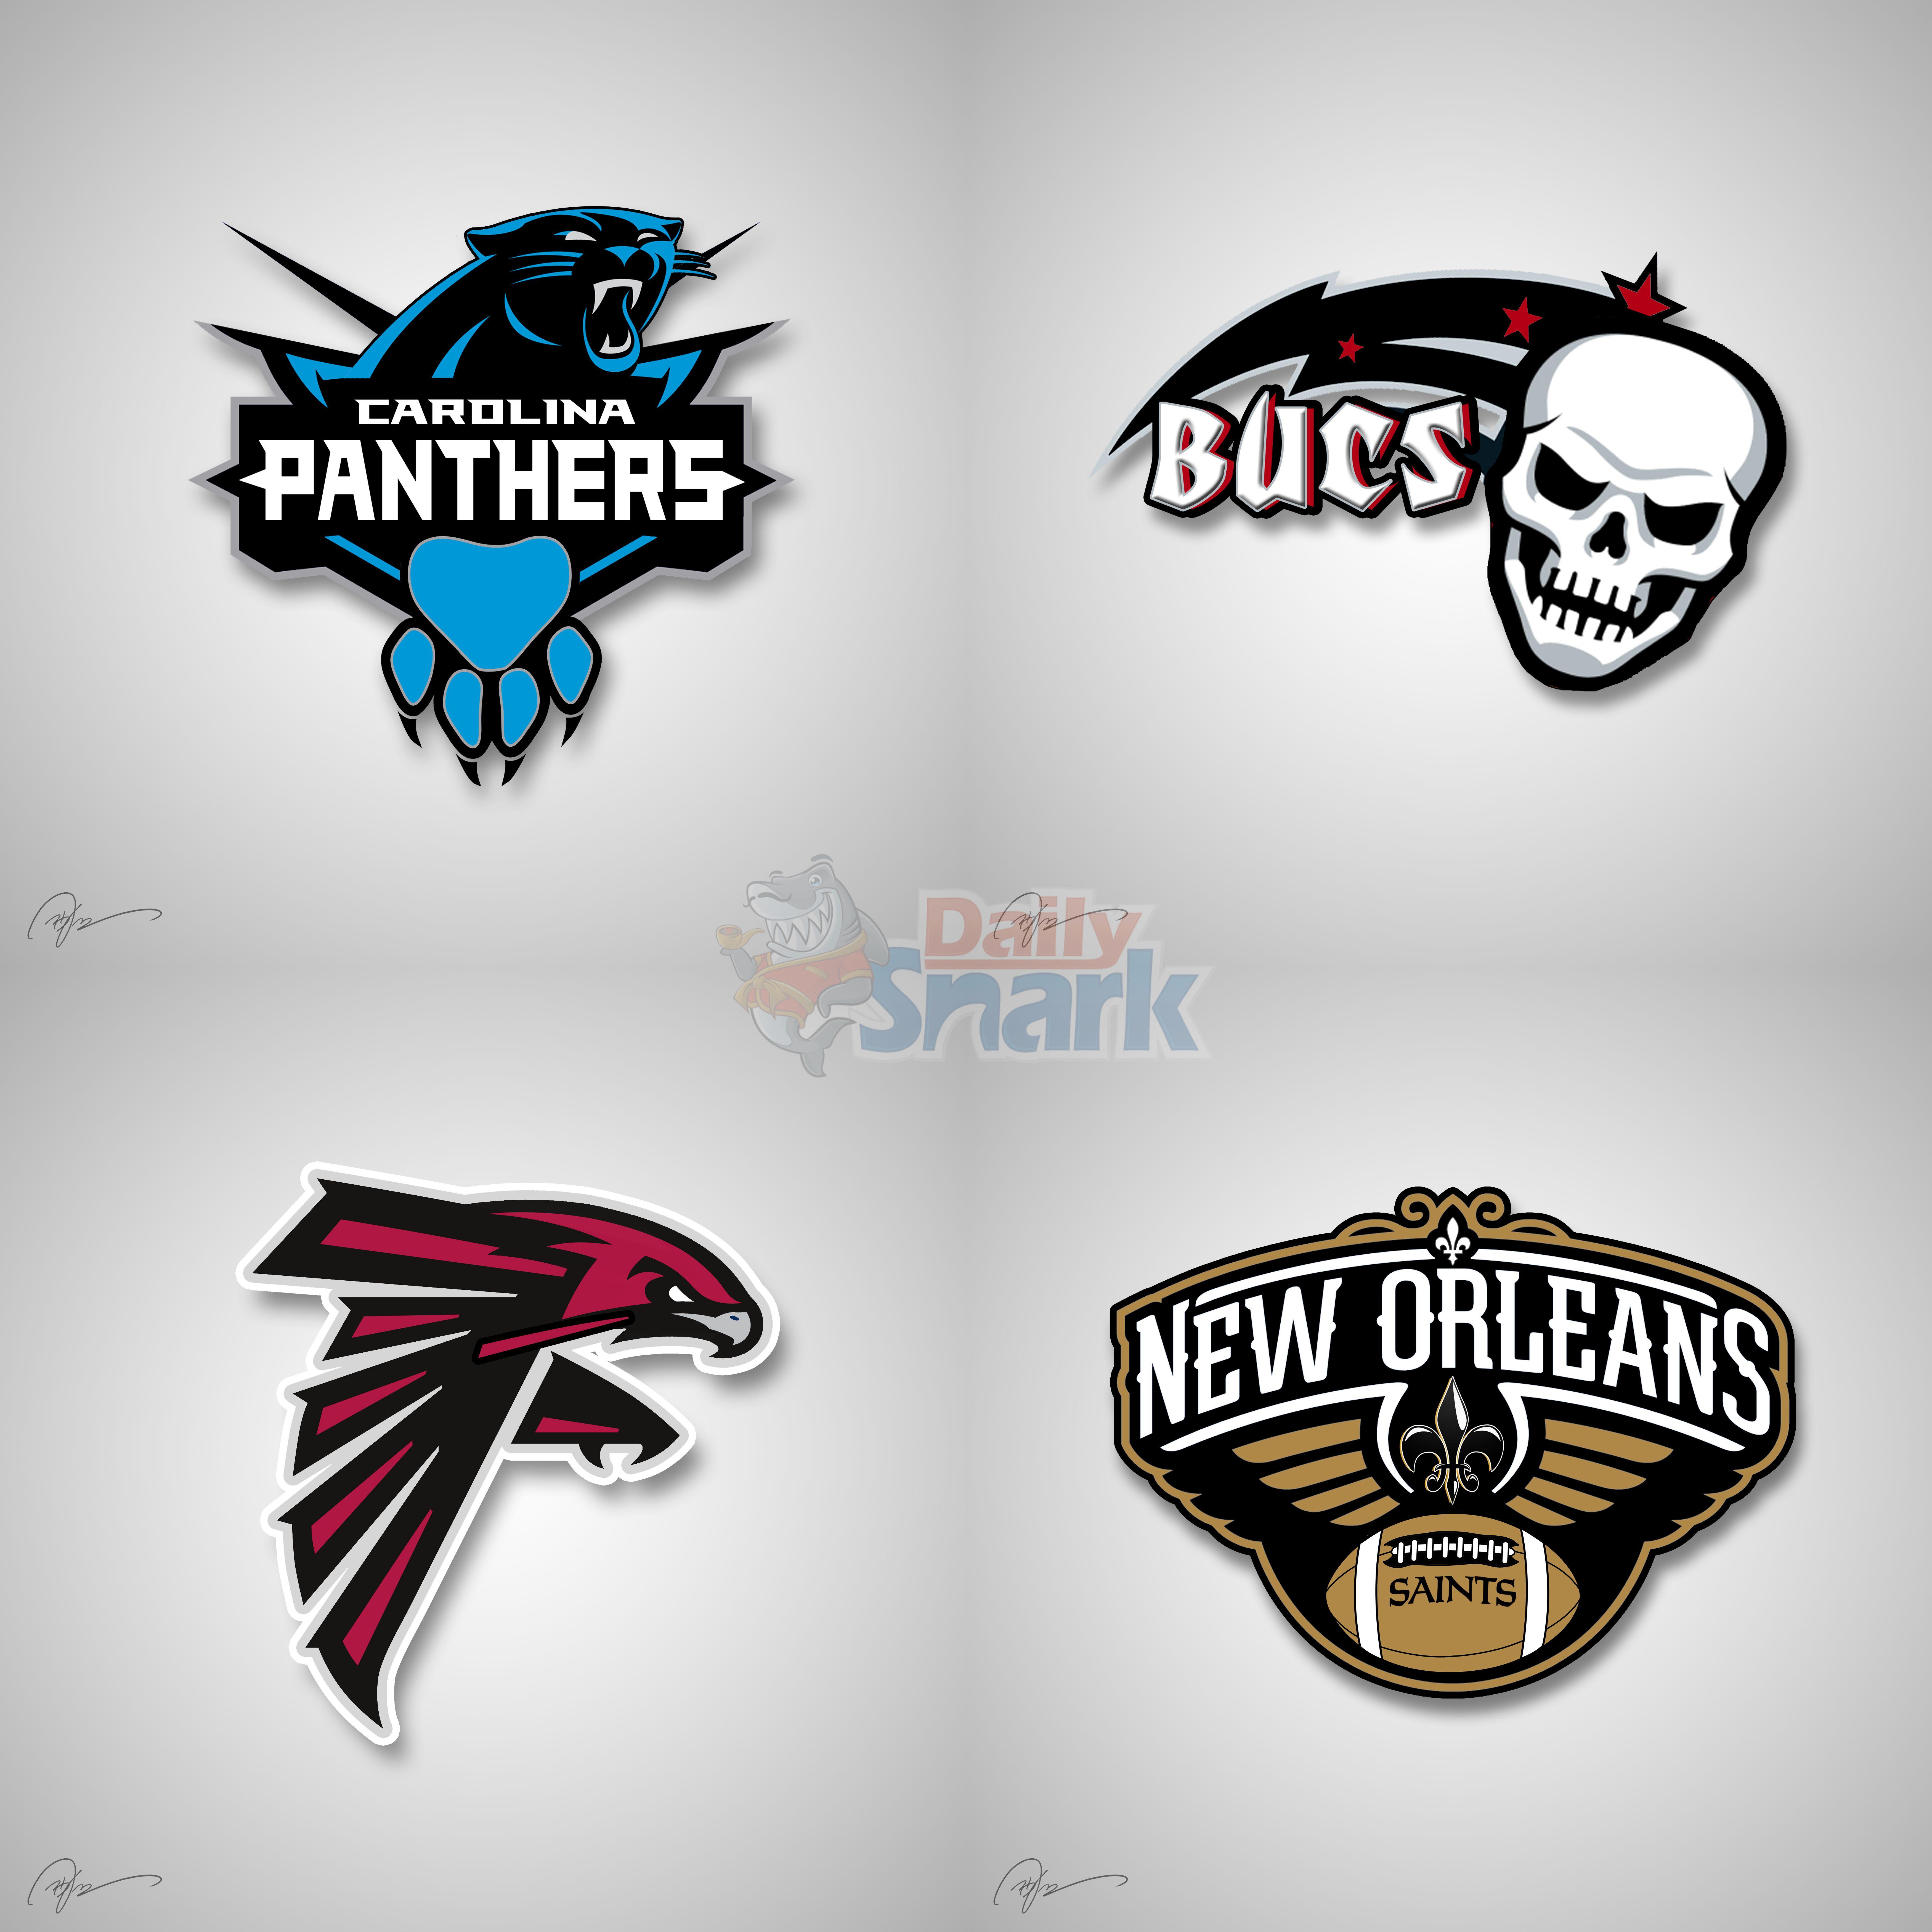 Cool NFL Team Logo - NFL Logos mixed with NBA Logos